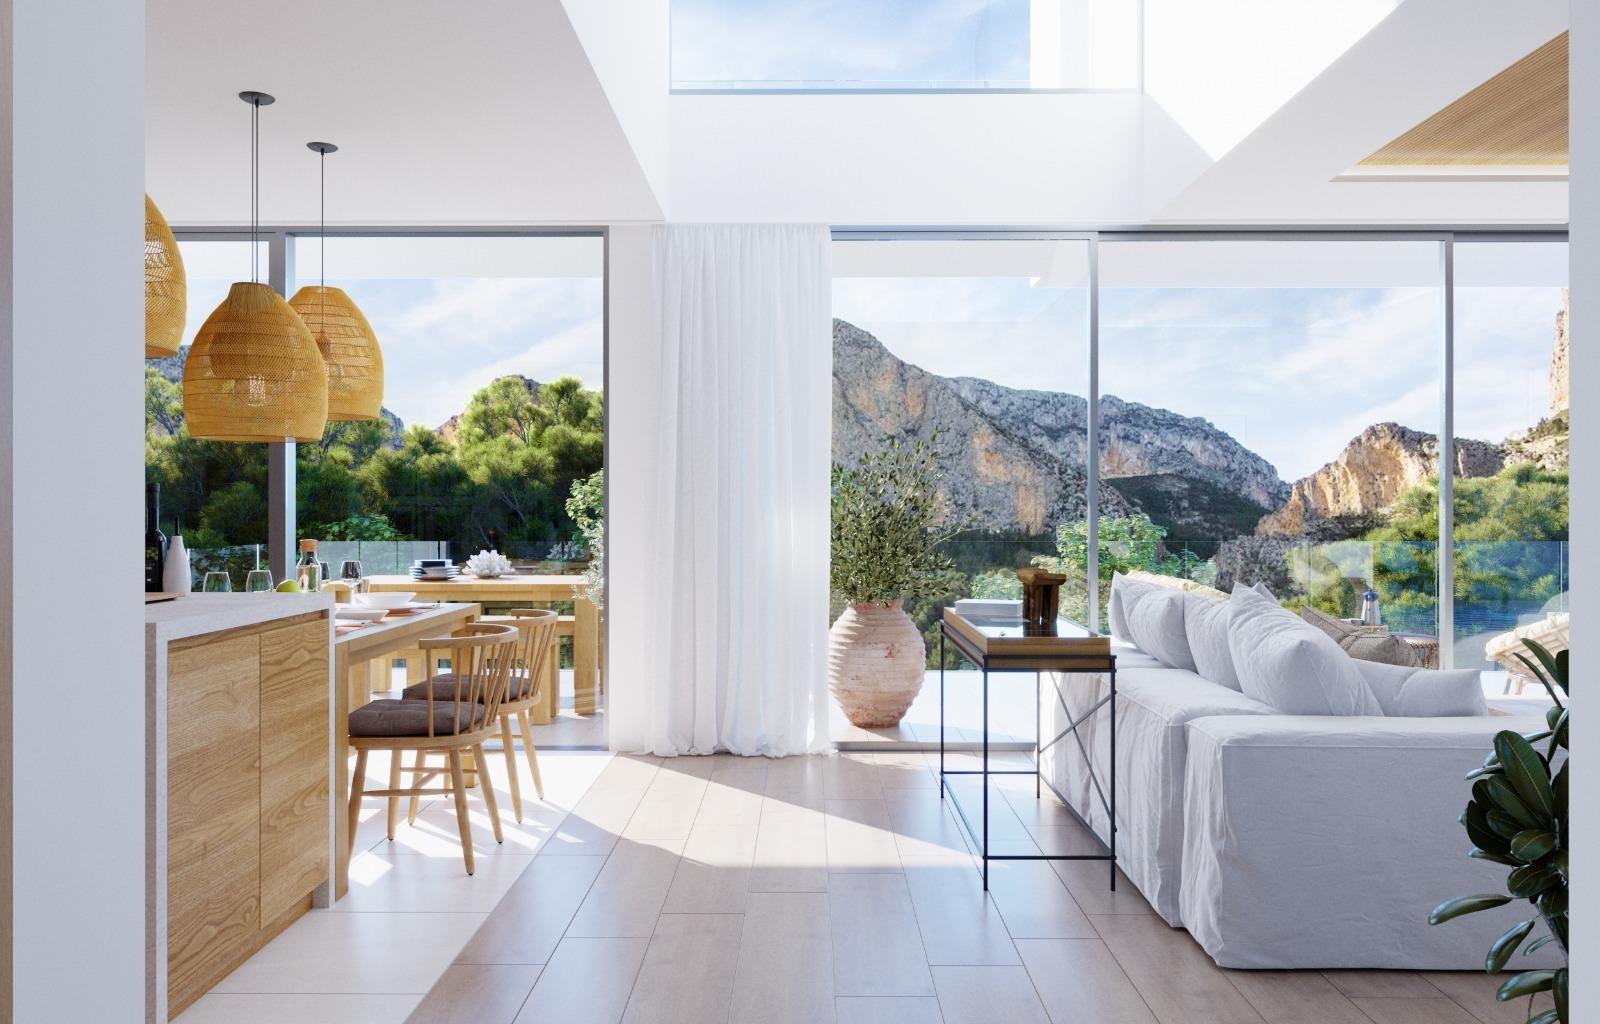 Nieuwbouwpromotie van 6 luxe villa's in Polop met uitzicht op de zee en de bergen.